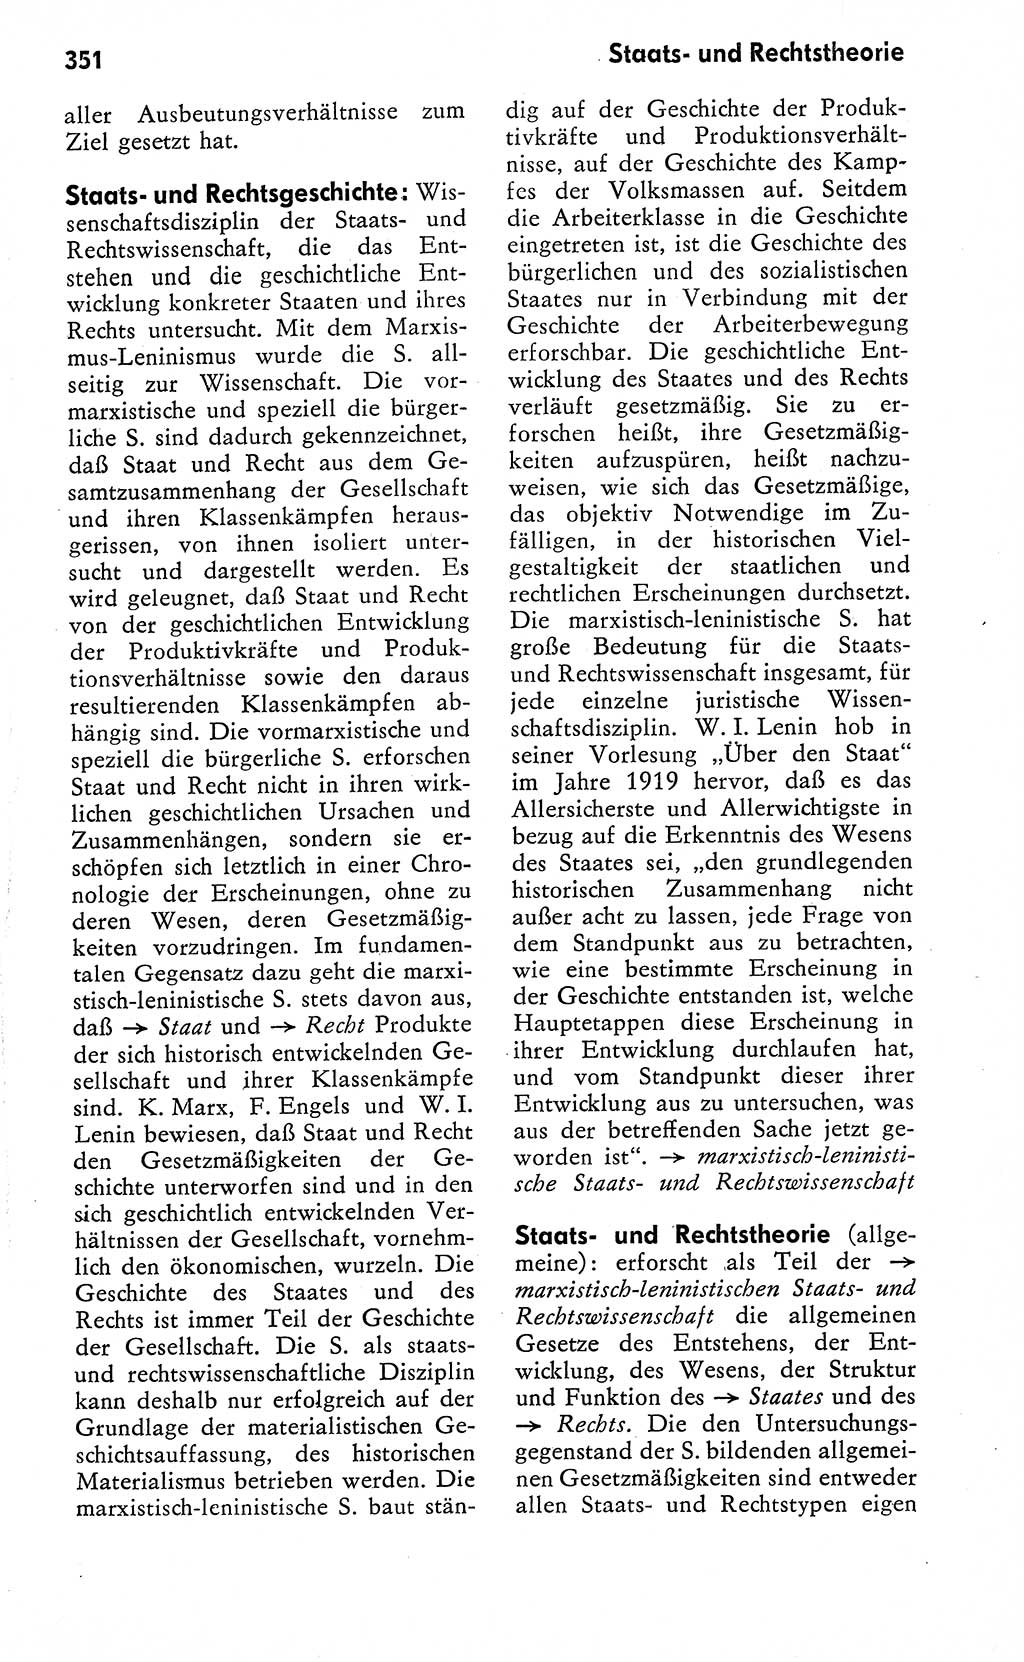 Wörterbuch zum sozialistischen Staat [Deutsche Demokratische Republik (DDR)] 1974, Seite 351 (Wb. soz. St. DDR 1974, S. 351)